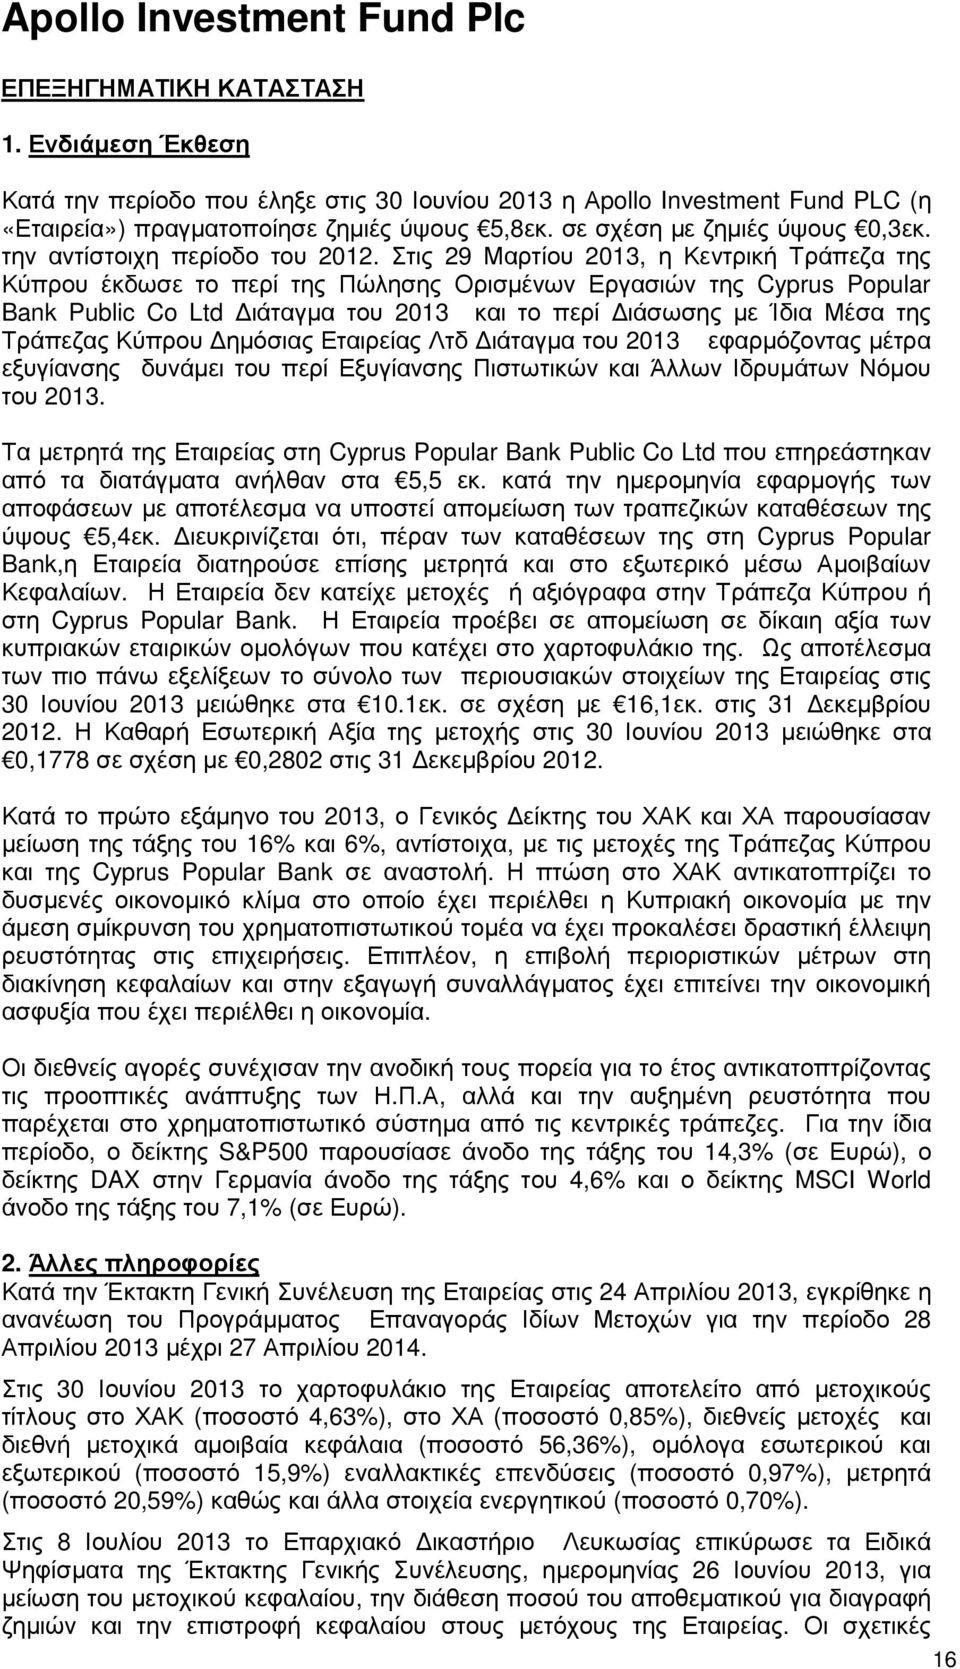 Στις 29 Μαρτίου 2013, η Κεντρική Τράπεζα της Κύπρου έκδωσε το περί της Πώλησης Ορισµένων Εργασιών της Cyprus Popular Bank Public Co Ltd ιάταγµα του 2013 και το περί ιάσωσης µε Ίδια Μέσα της Τράπεζας